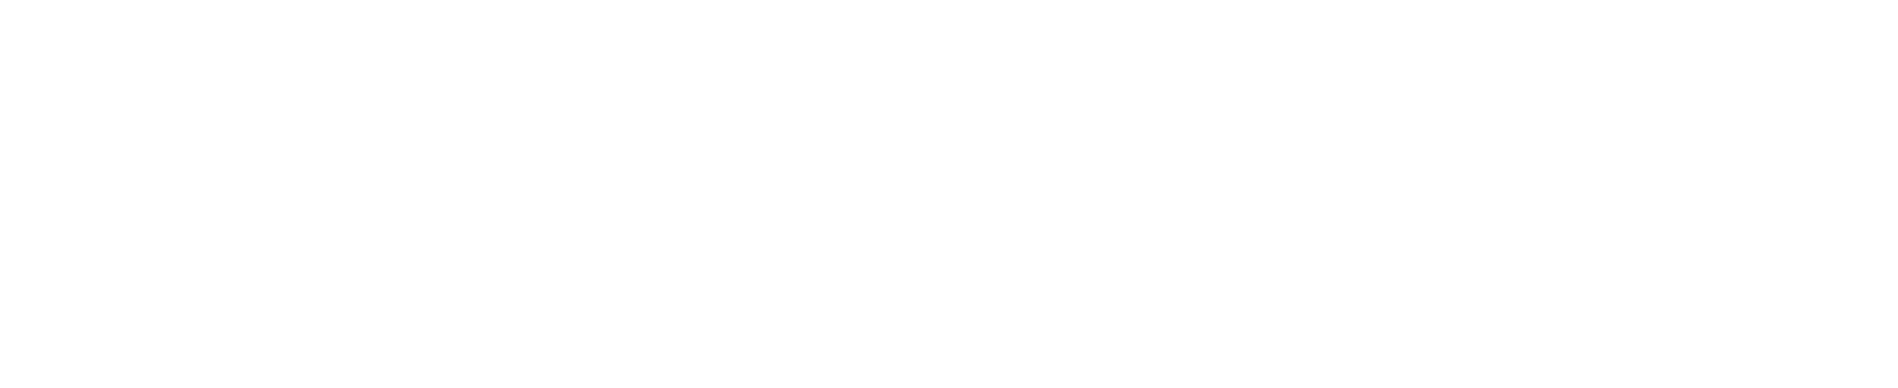 Mister Cooler - Modern, Portable, Misting System